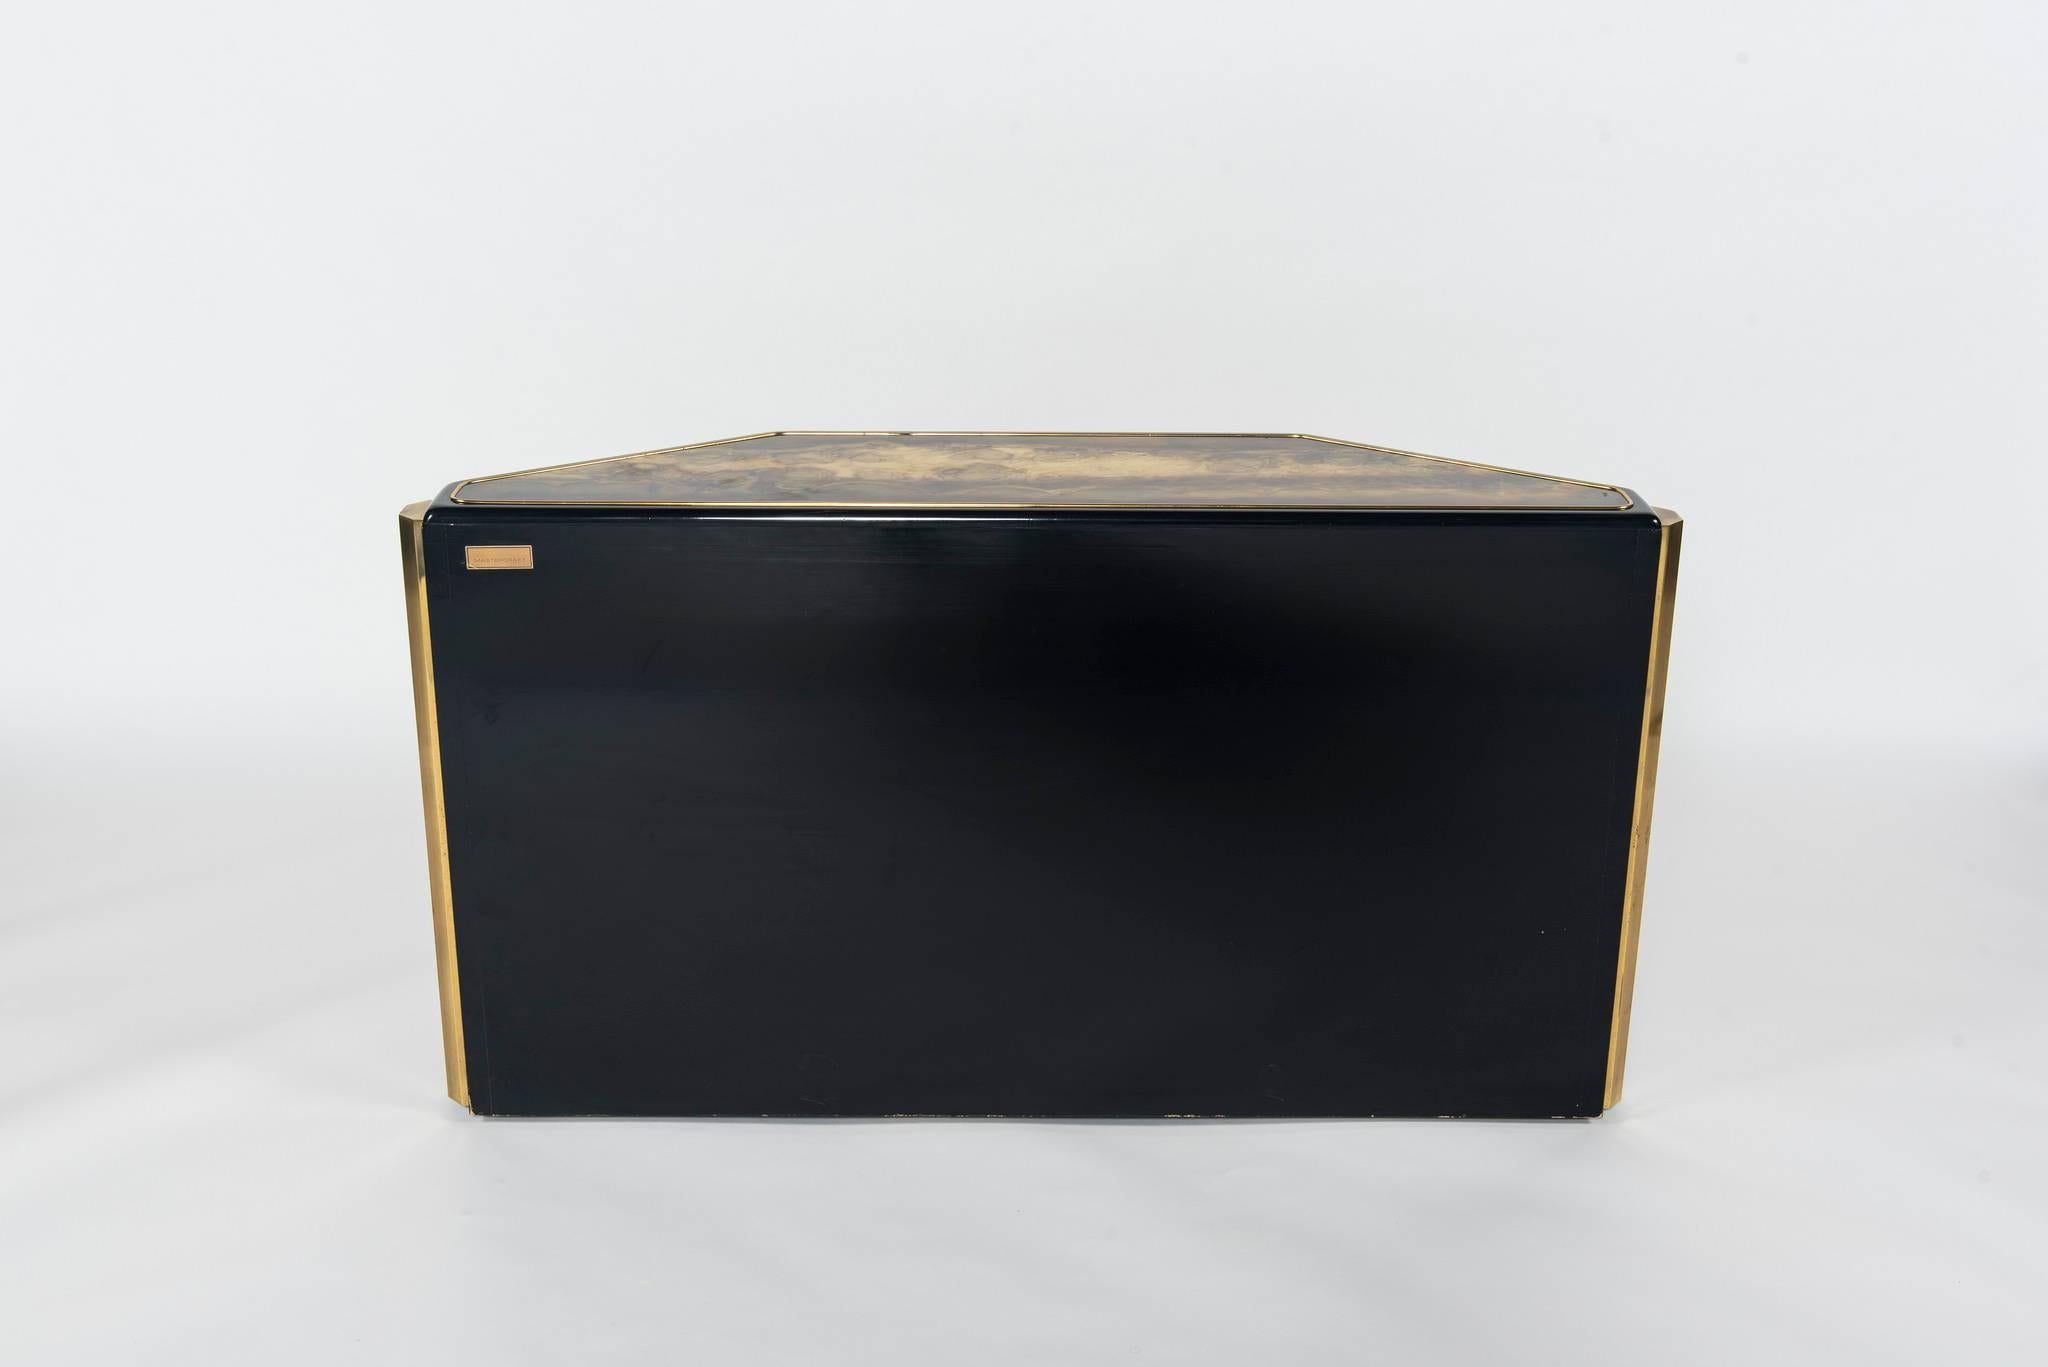 Etched Brass Mastercraft Cabinet by Bernhard Rohne 1